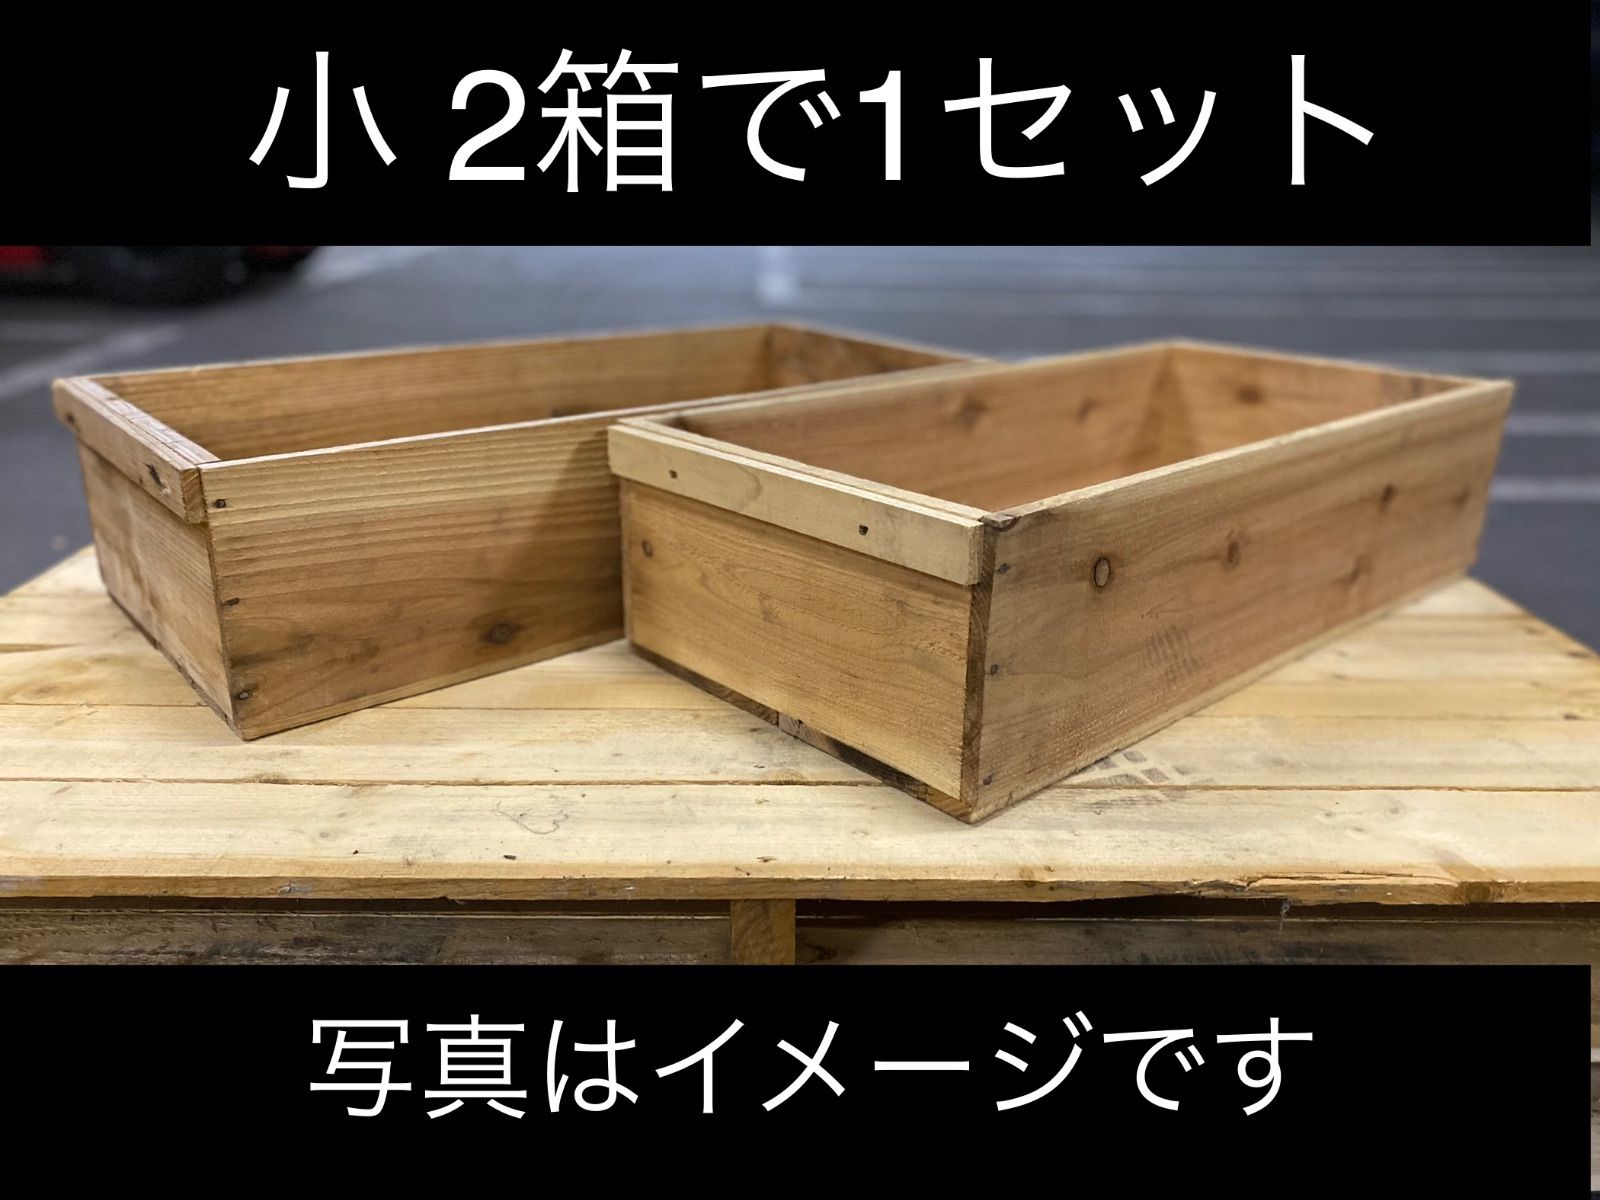 ㉜4箱セット送料無料リンゴ箱りんご箱C品 木箱 | www.modelosbrazil